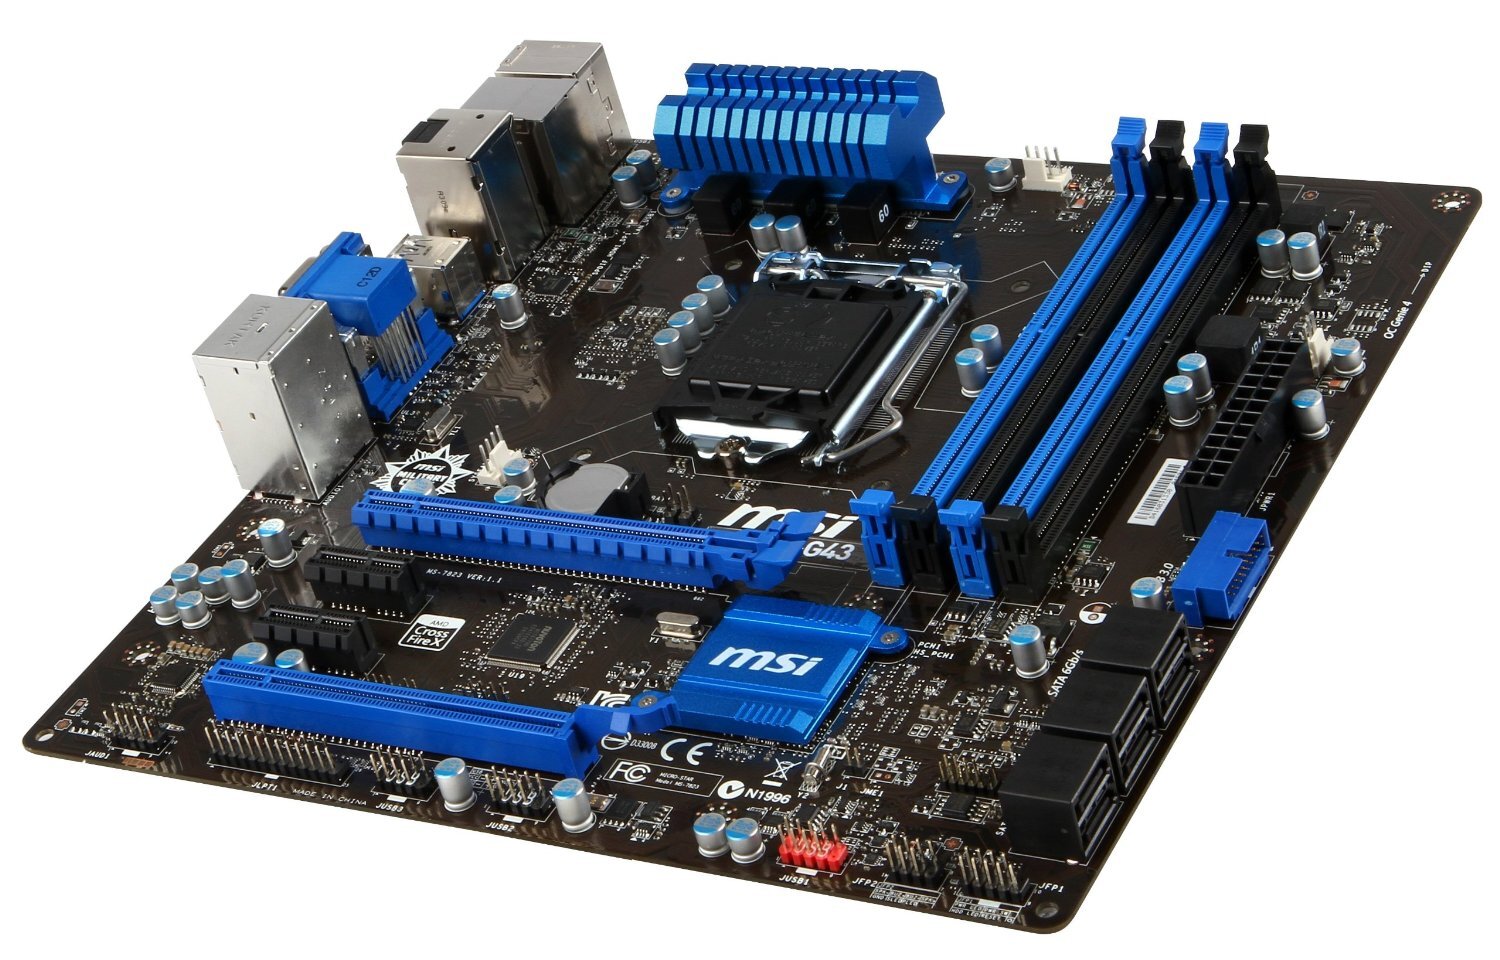 Bo mạch chủ - Mainboard MSI Z87M-G43 - Socket 1150, Intel Z87, 4 x DIMM, Max 32GB, DDR3